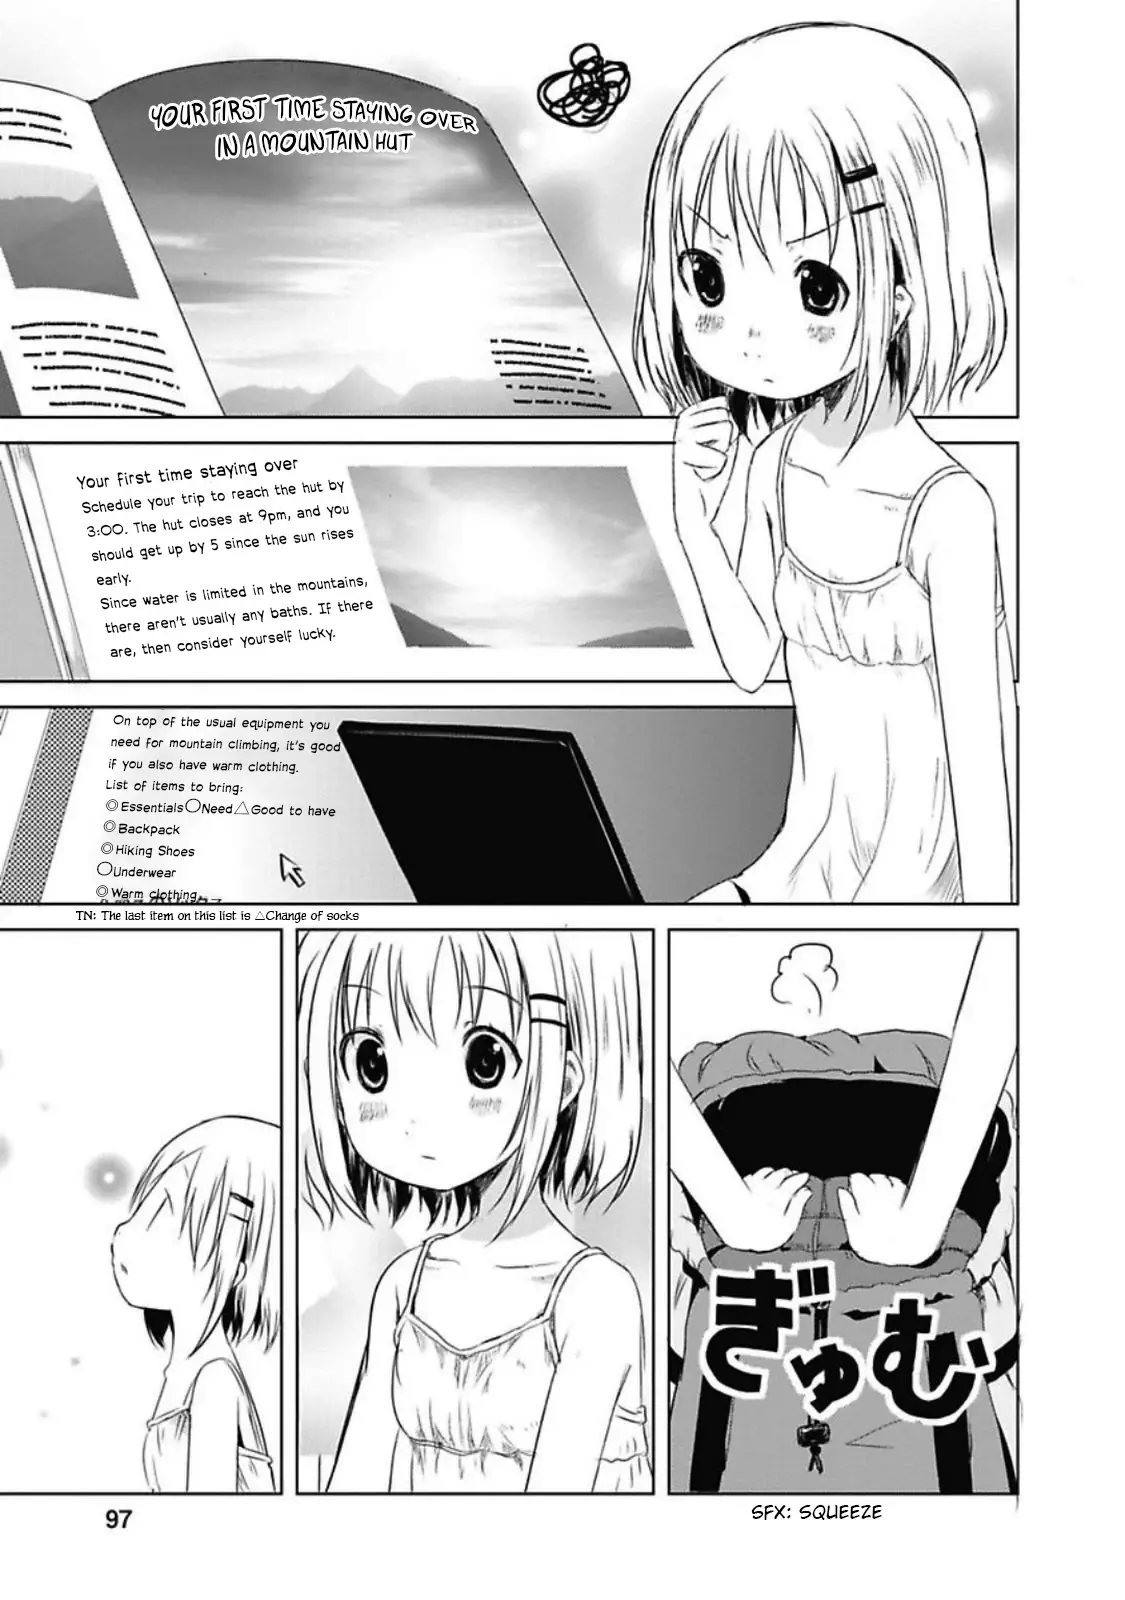 Yama No Susume - 29 page 3